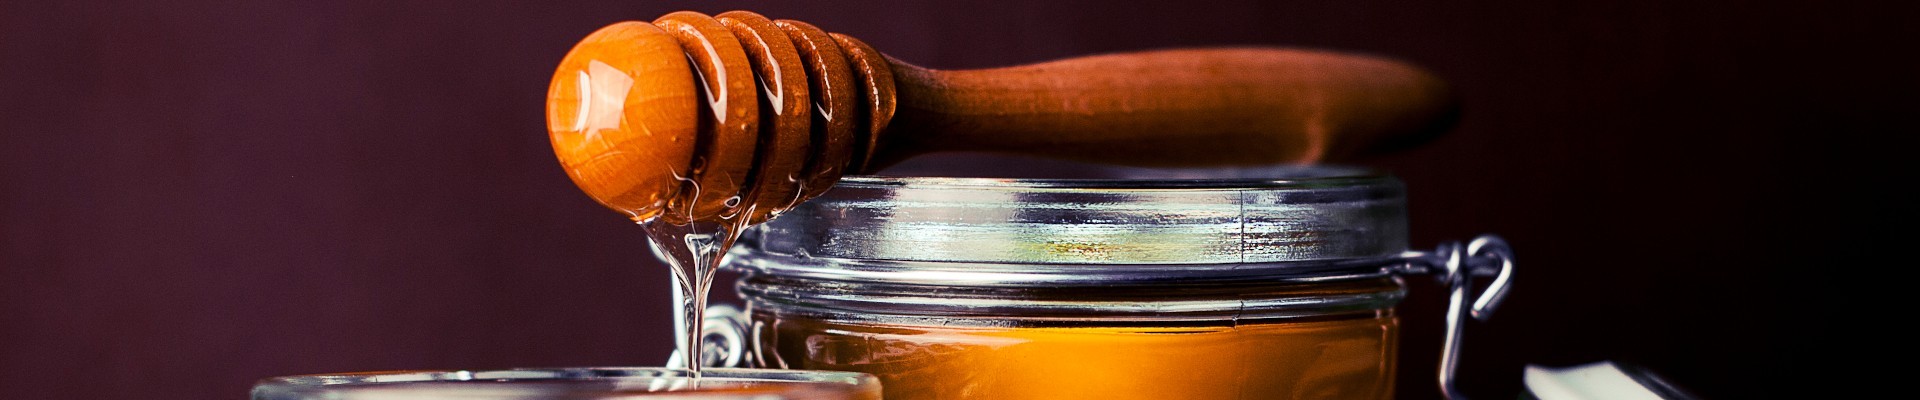 Toutes les vertus du miel autant gourmandise que médicinal.